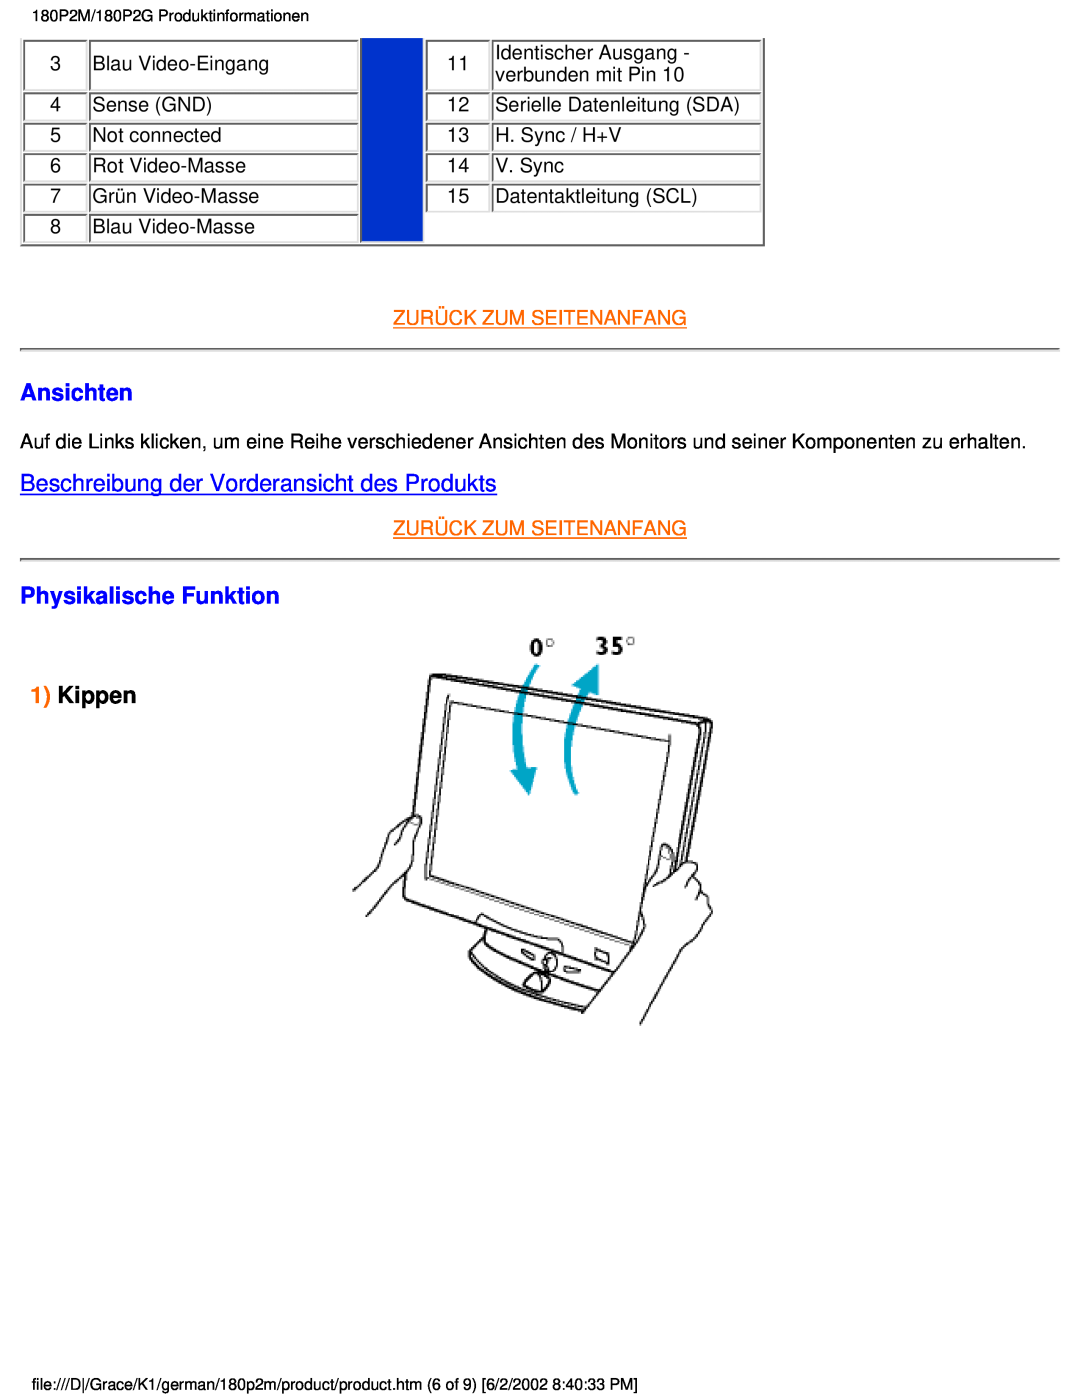 Philips 180P2G user manual Ansichten, Beschreibung der Vorderansicht des Produkts, Physikalische Funktion, Kippen 